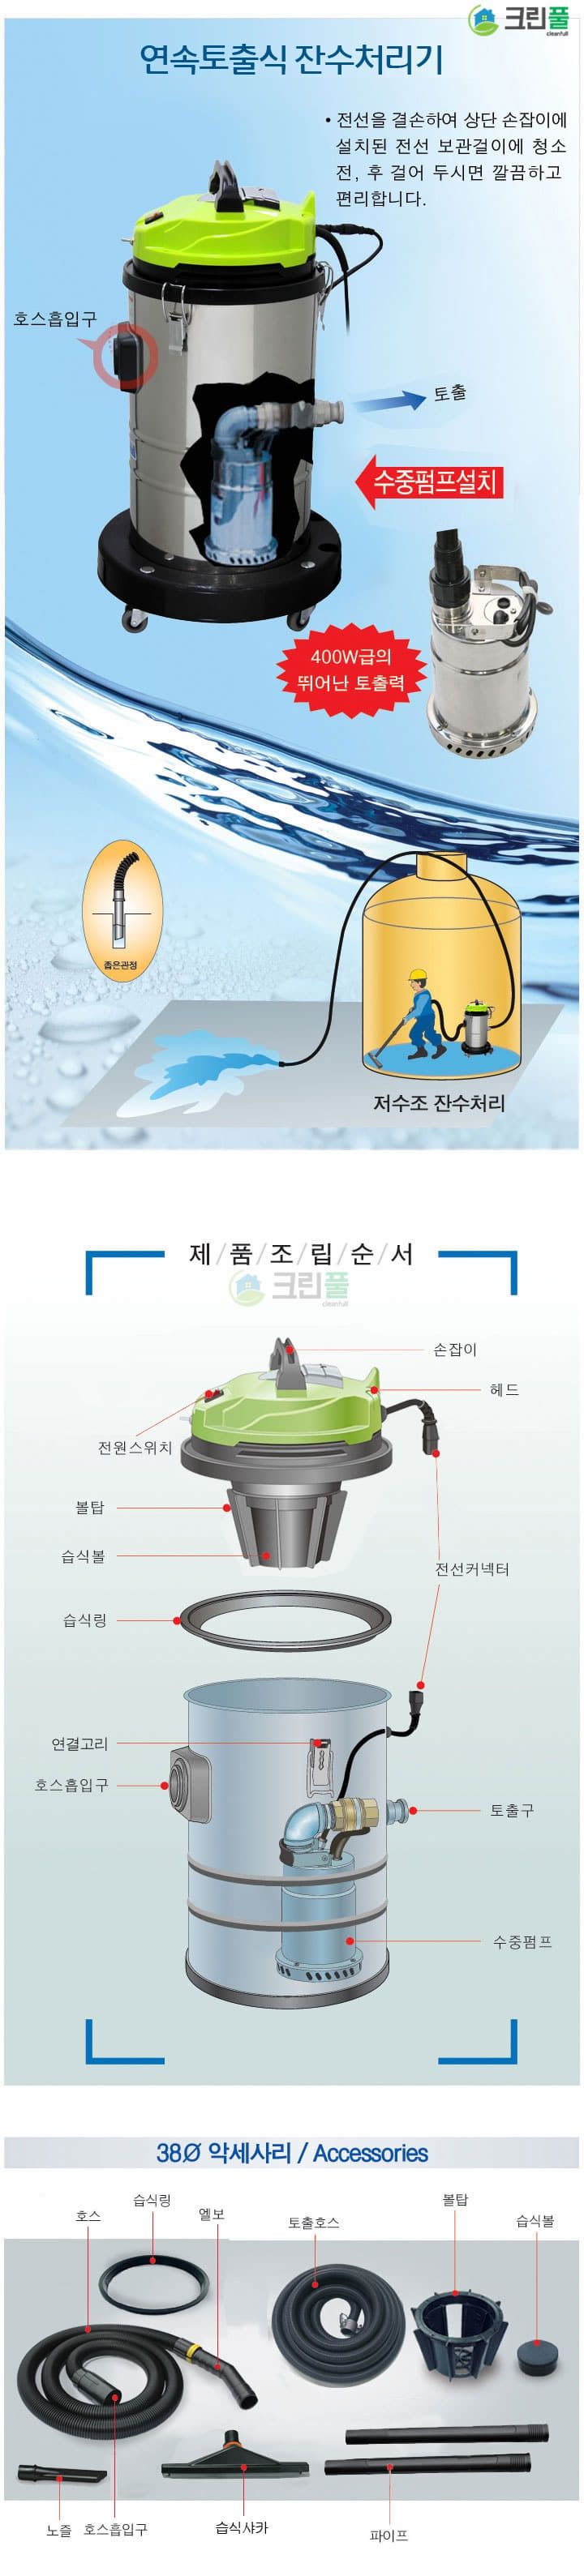 연속토출식 습식진공청소기(1모터)_저수조청소업 신고 허가장비-잔수처리기